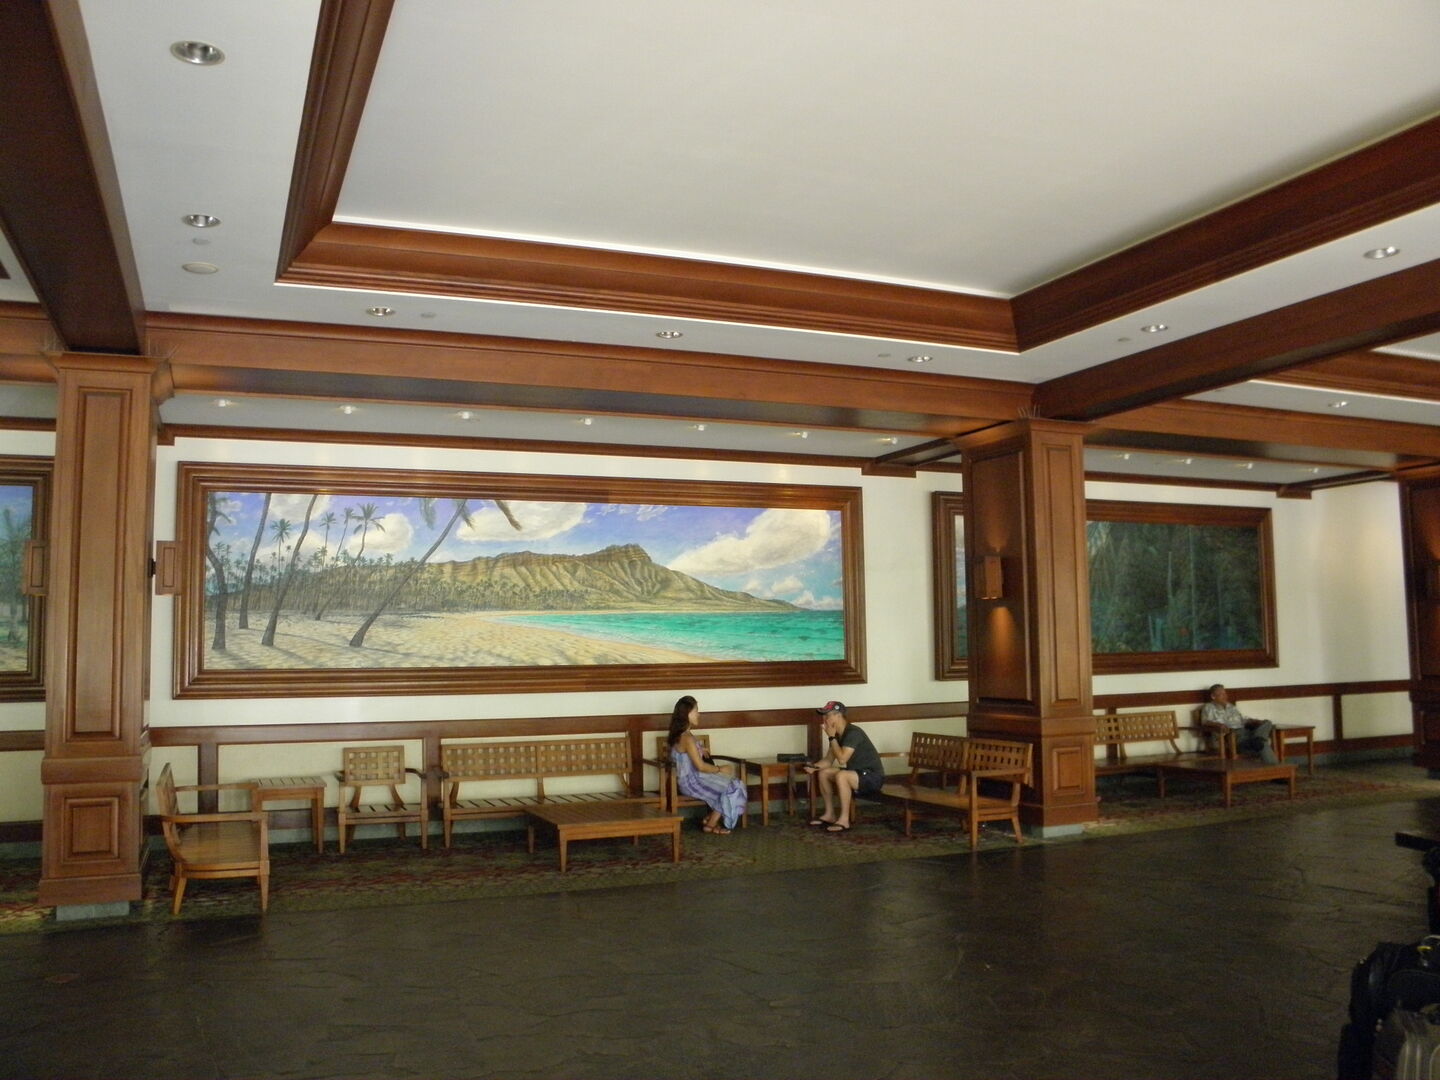 Lobby area